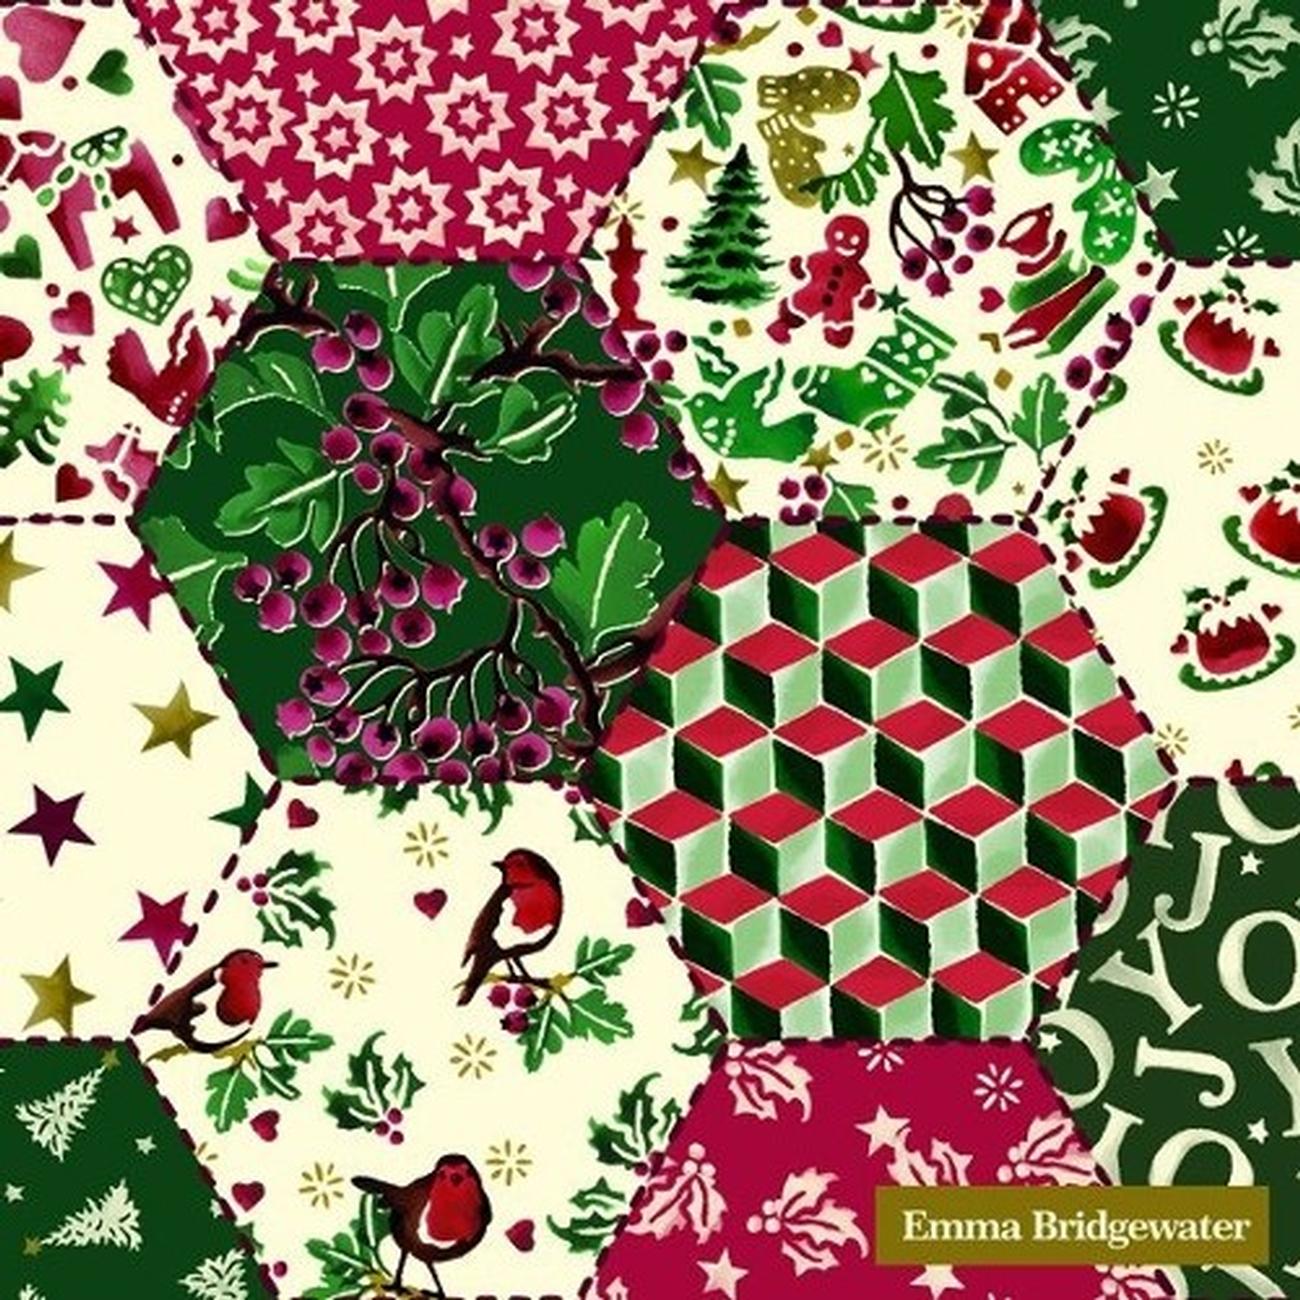 ihr-xmas-em-patchwork-lunch-napkins - IHR Christmas Lunch Napkins Emma Bridgewater Patchwork Cream